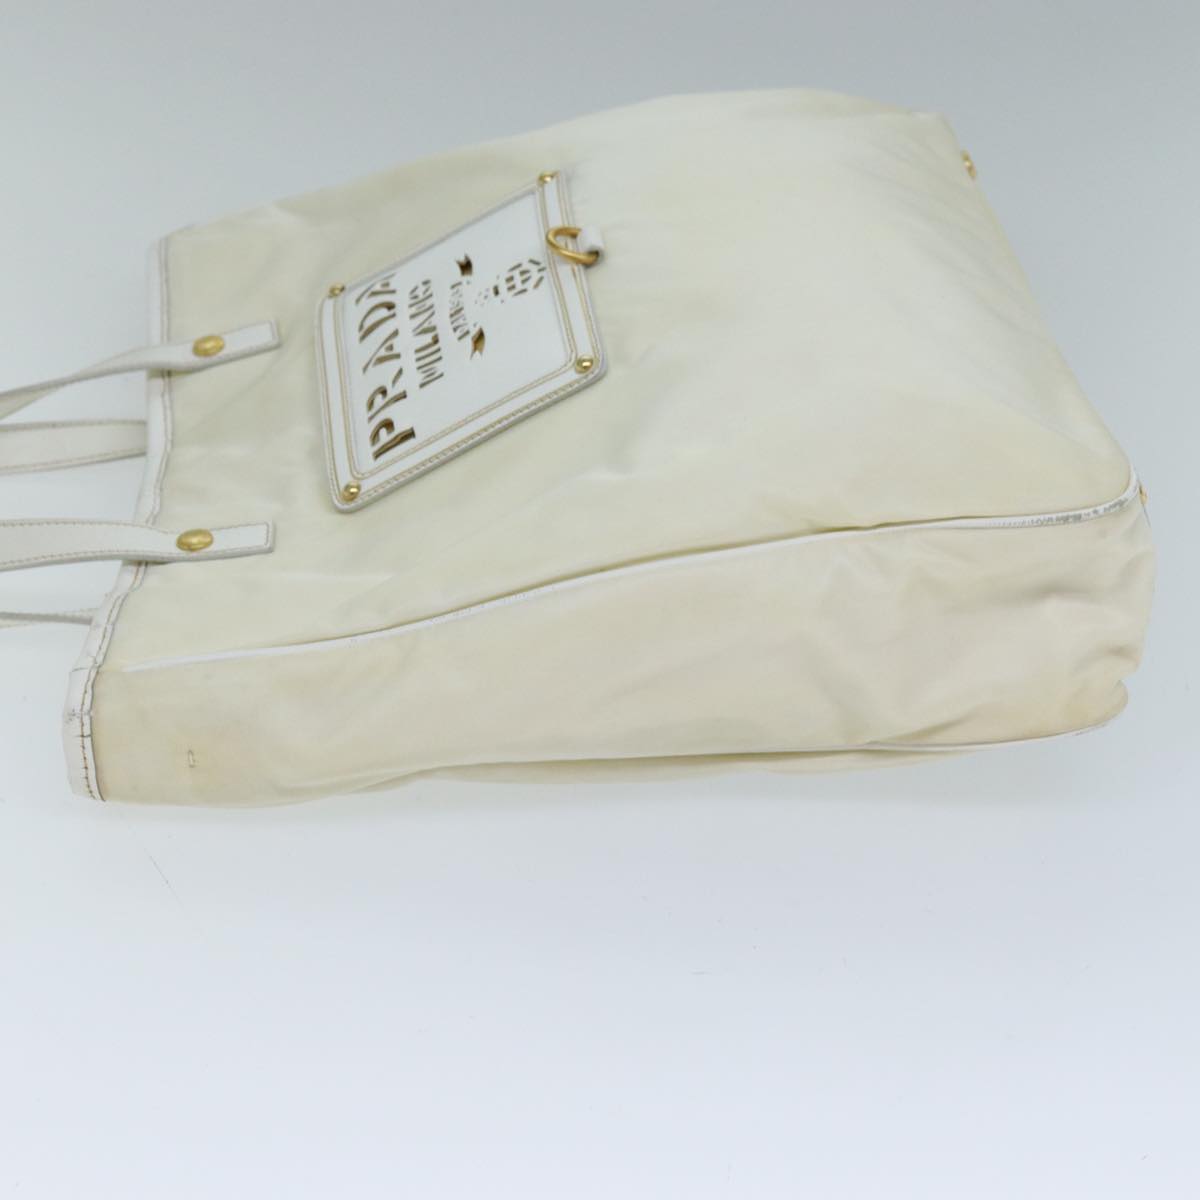 PRADA Tote Bag Nylon 2way White Auth 73106